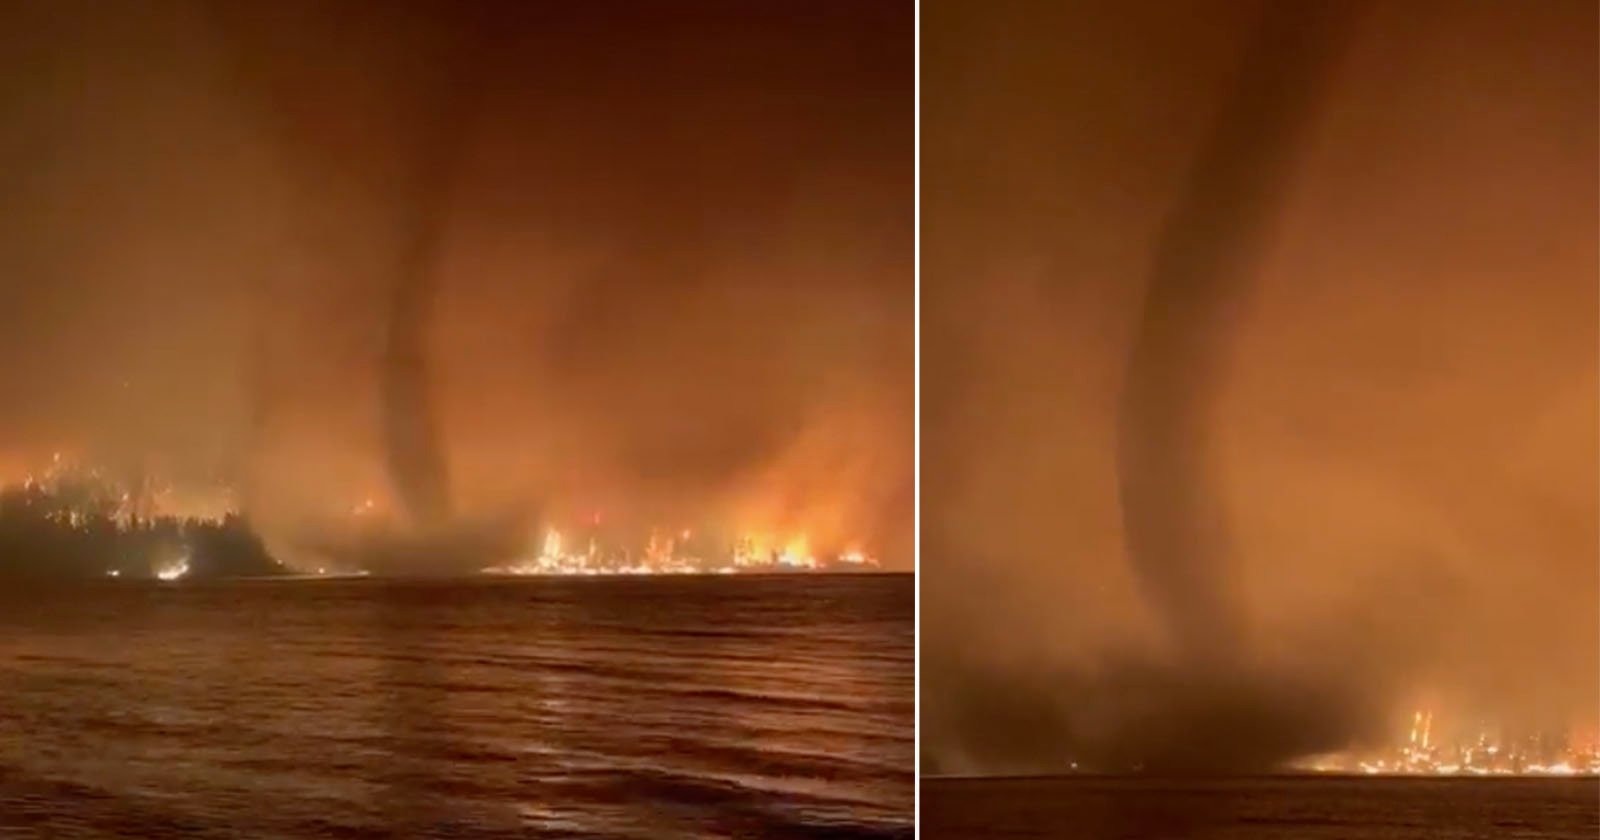  rare fire tornado filmed over lake canada 